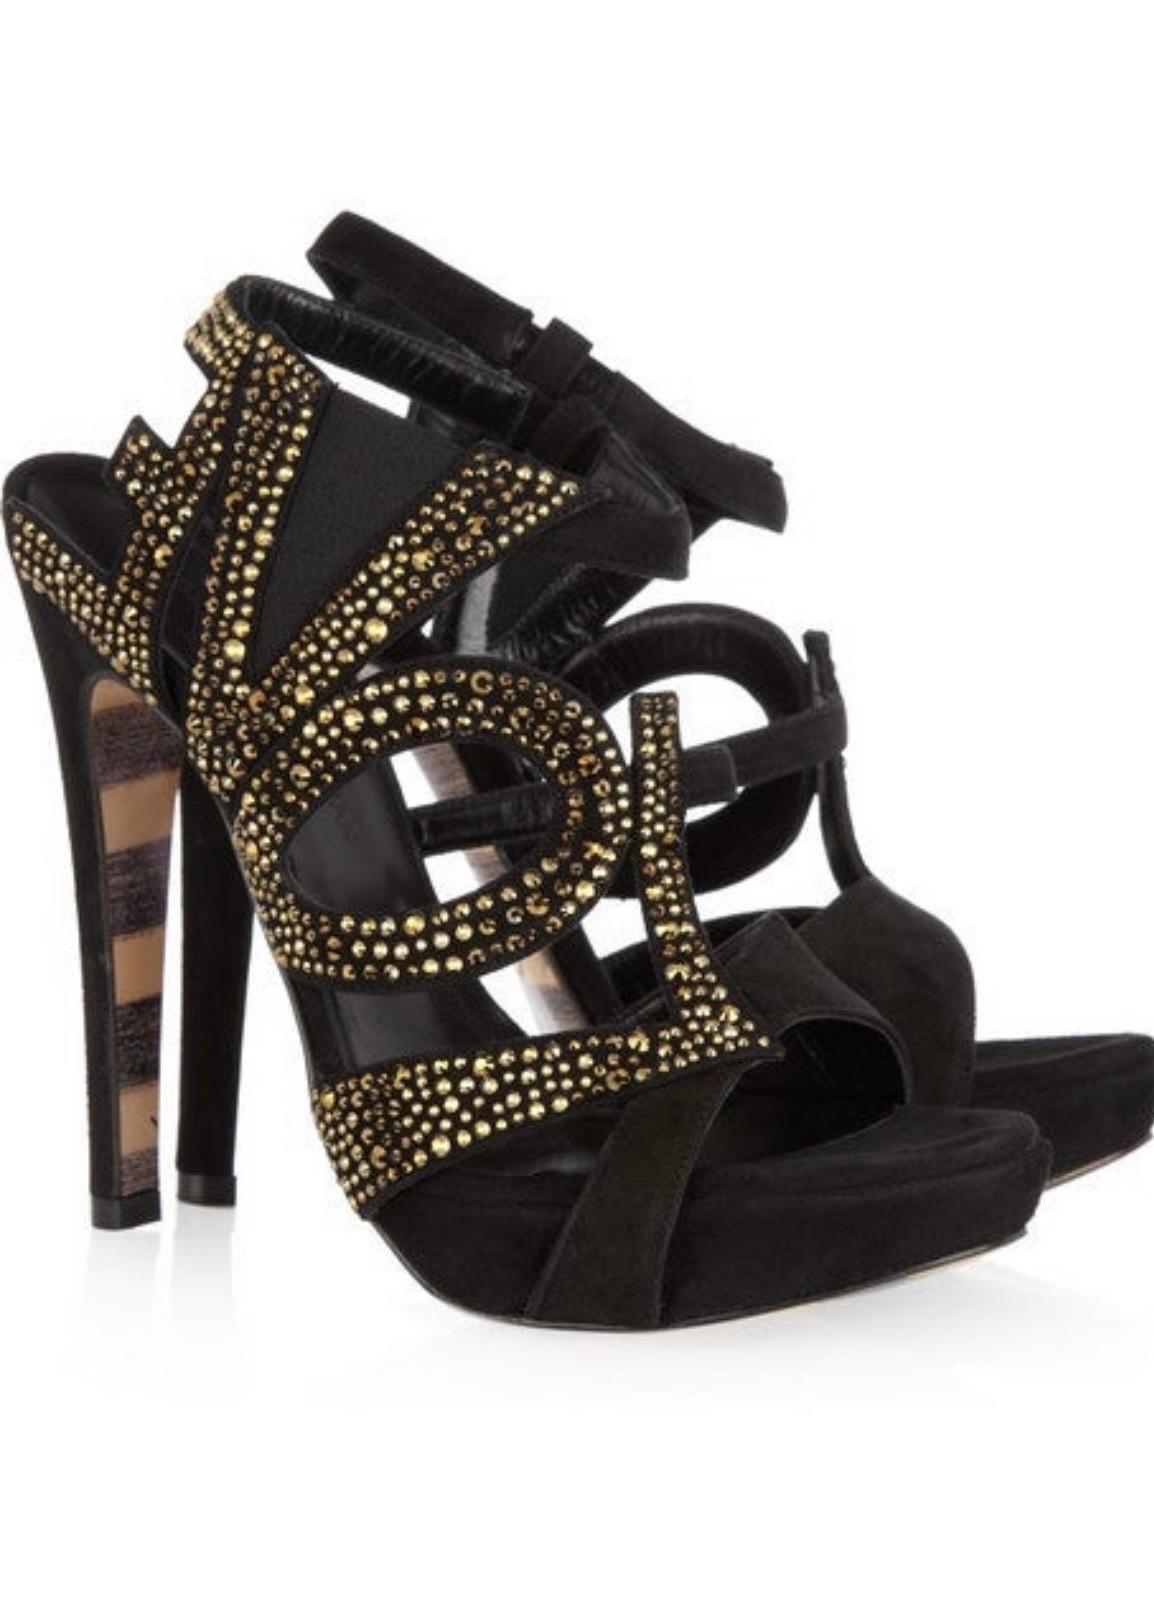 Black New Georgina Goodman Love crystal-embellished black suede platform sandals 9.5  For Sale